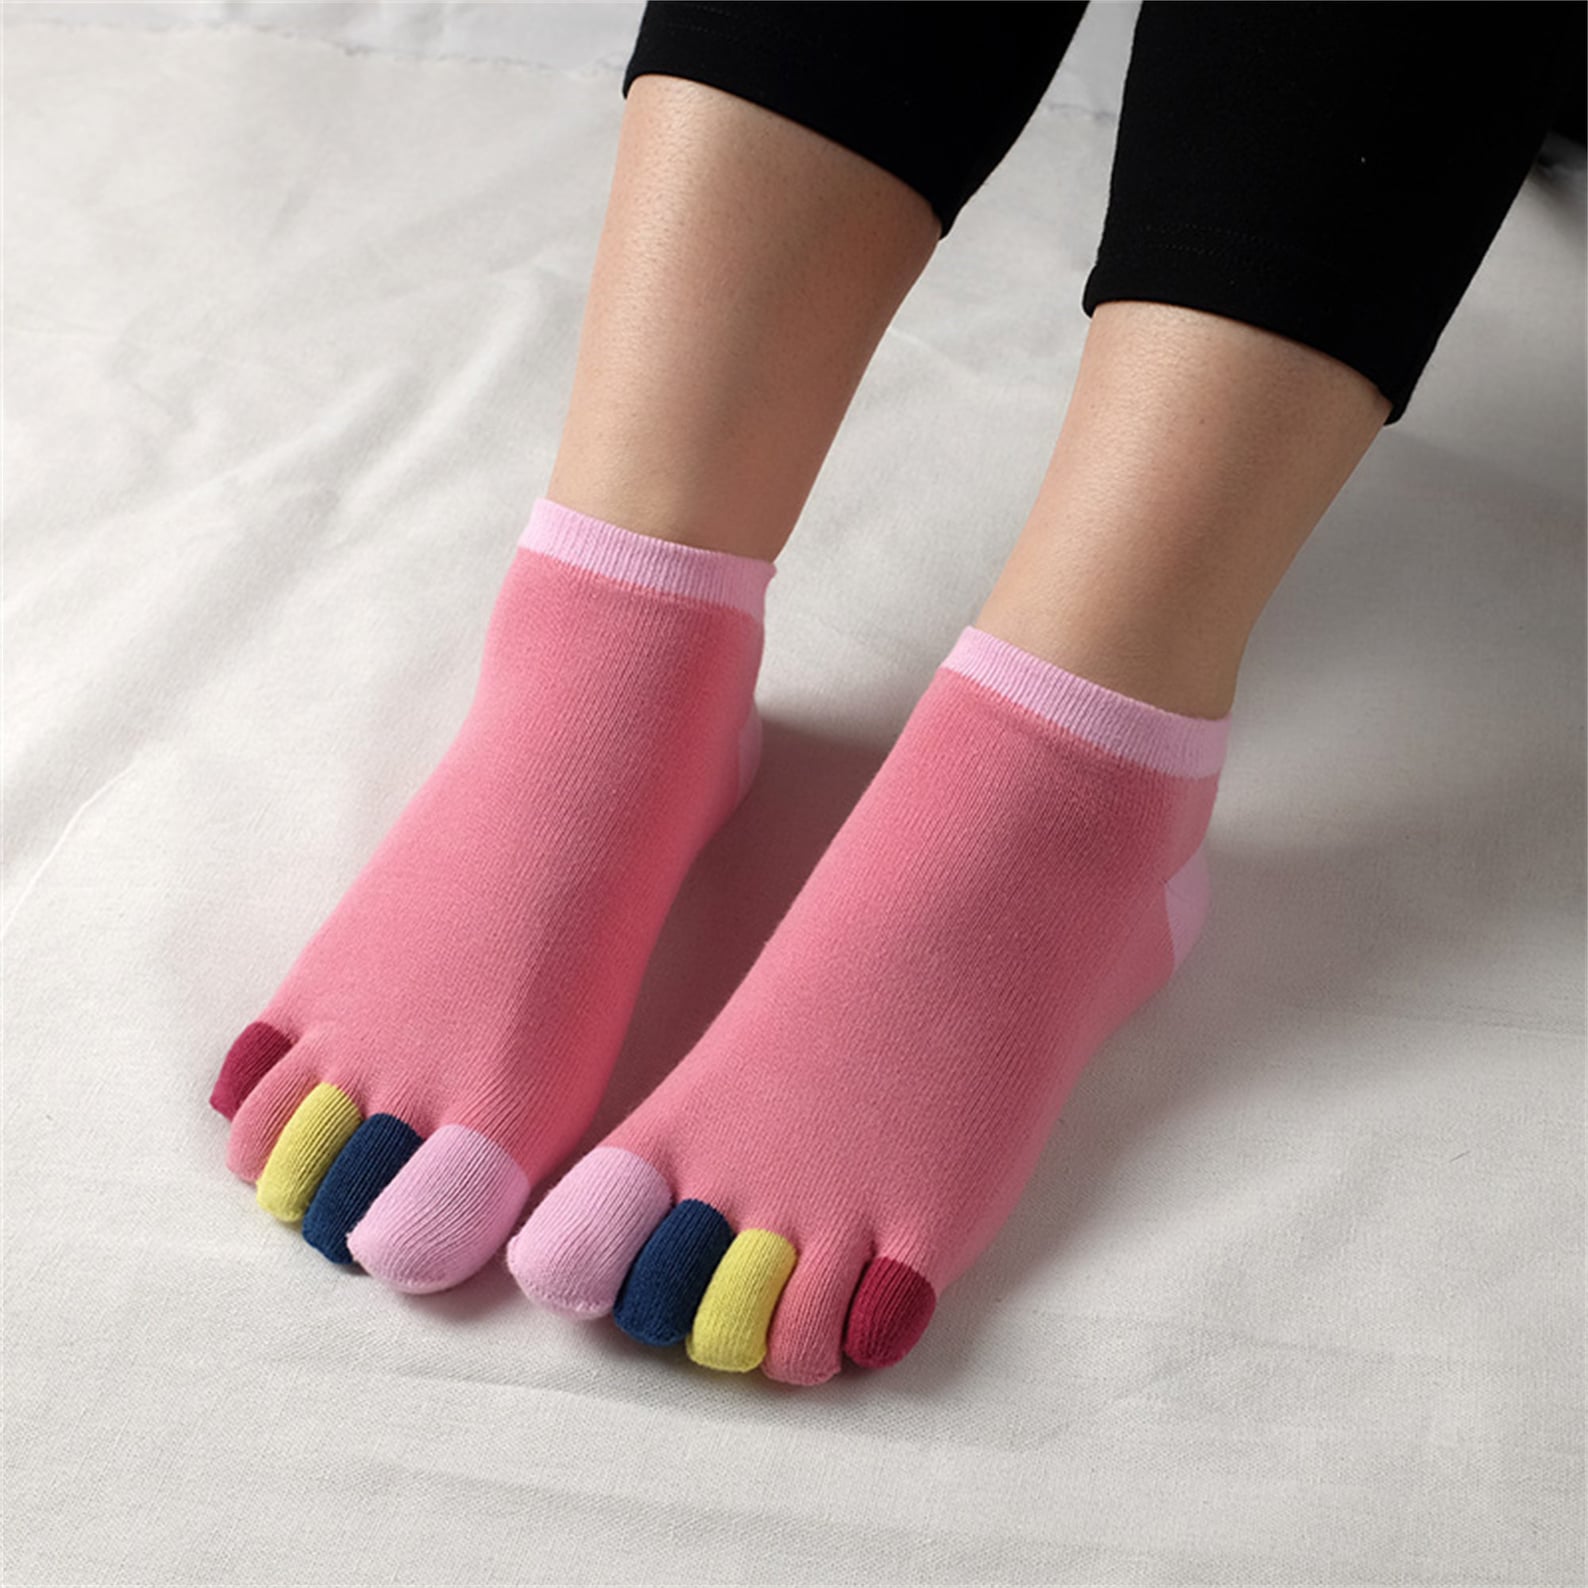 Japanese style women's Split-Toe tabi five toes socks | Etsy